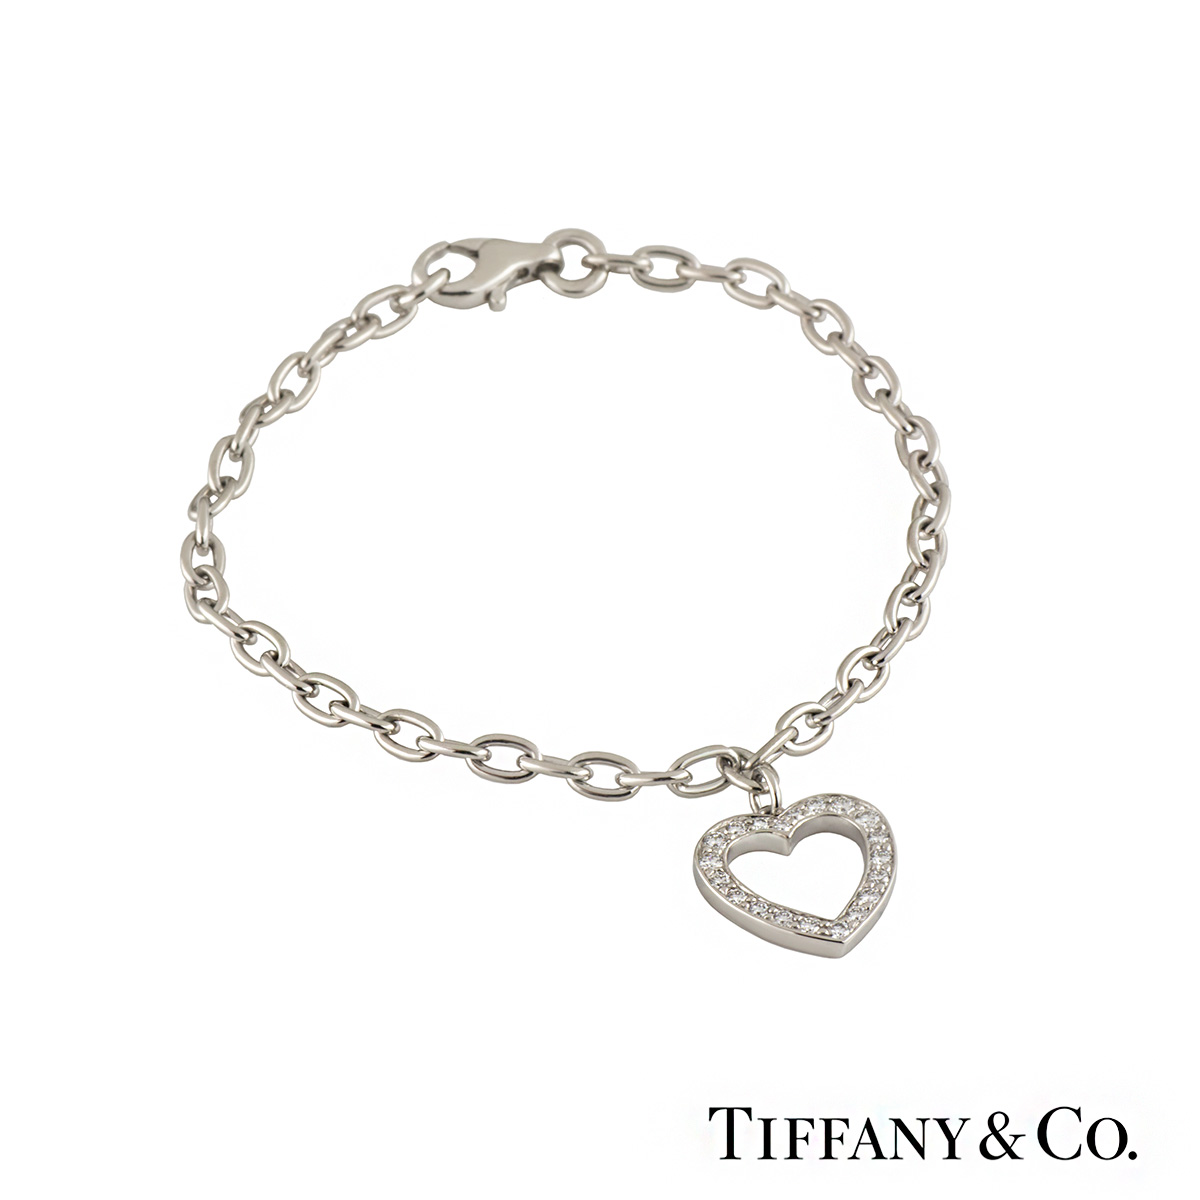 Details more than 72 diamond heart charm bracelet best - in.duhocakina